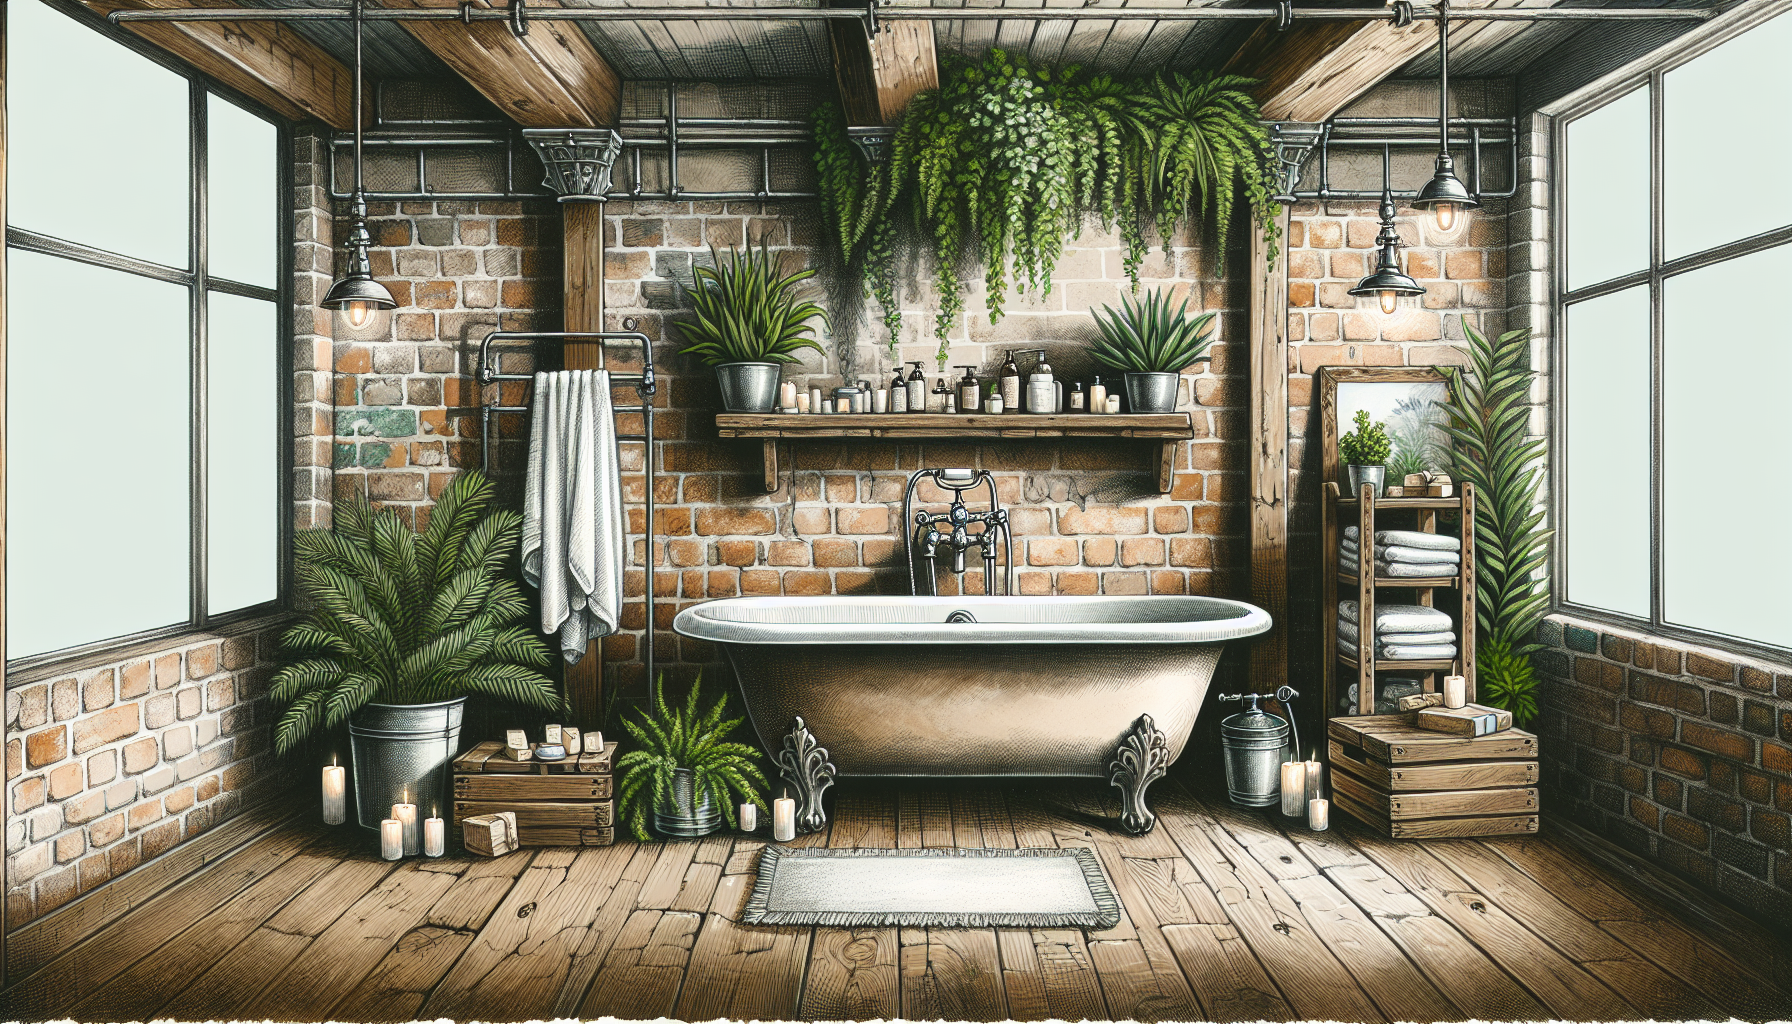 Natürliche Akzente im Industrial Style Badezimmer mit Pflanzen und Deko-Elementen